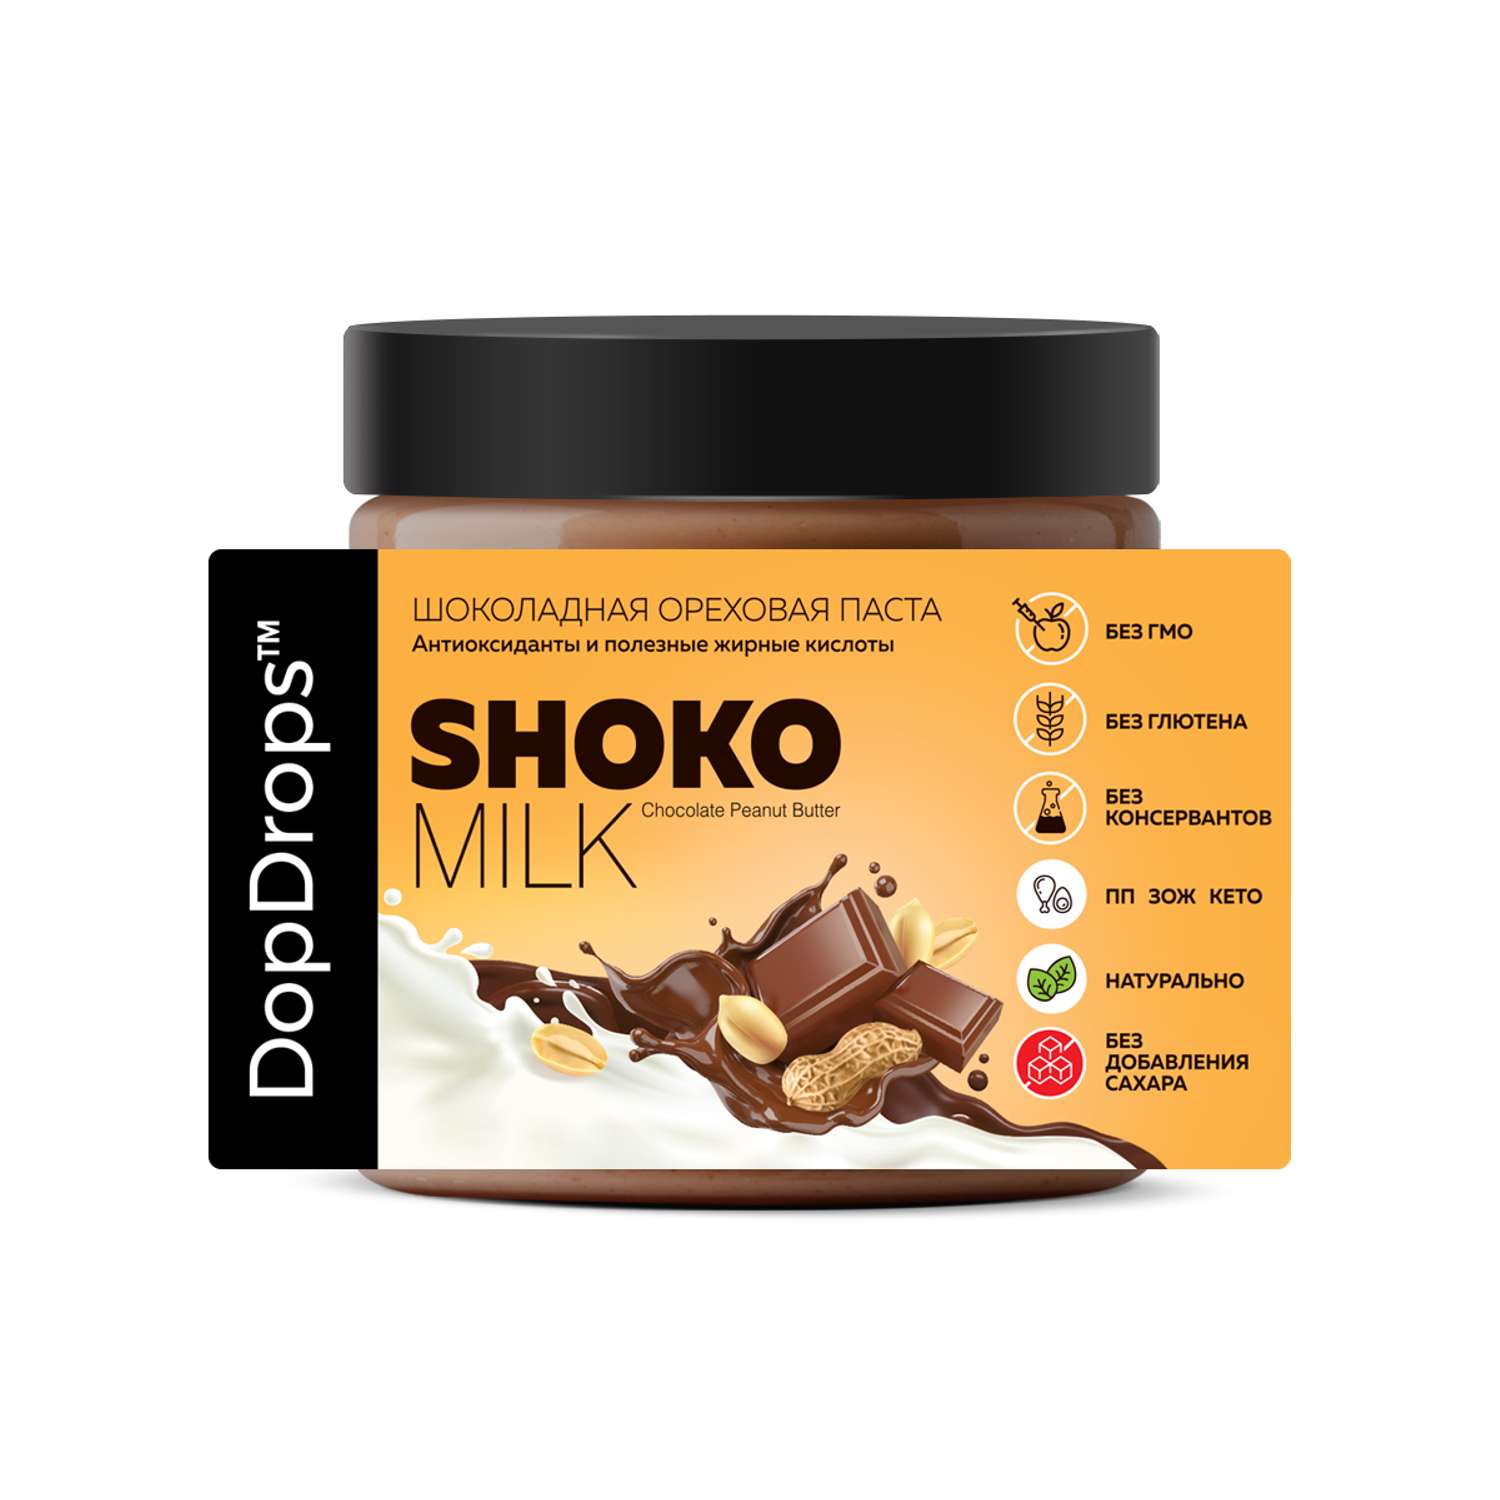 Шоколадная ореховая паста DopDrops Shoko milk арахисовая без сахара 500 г - фото 4